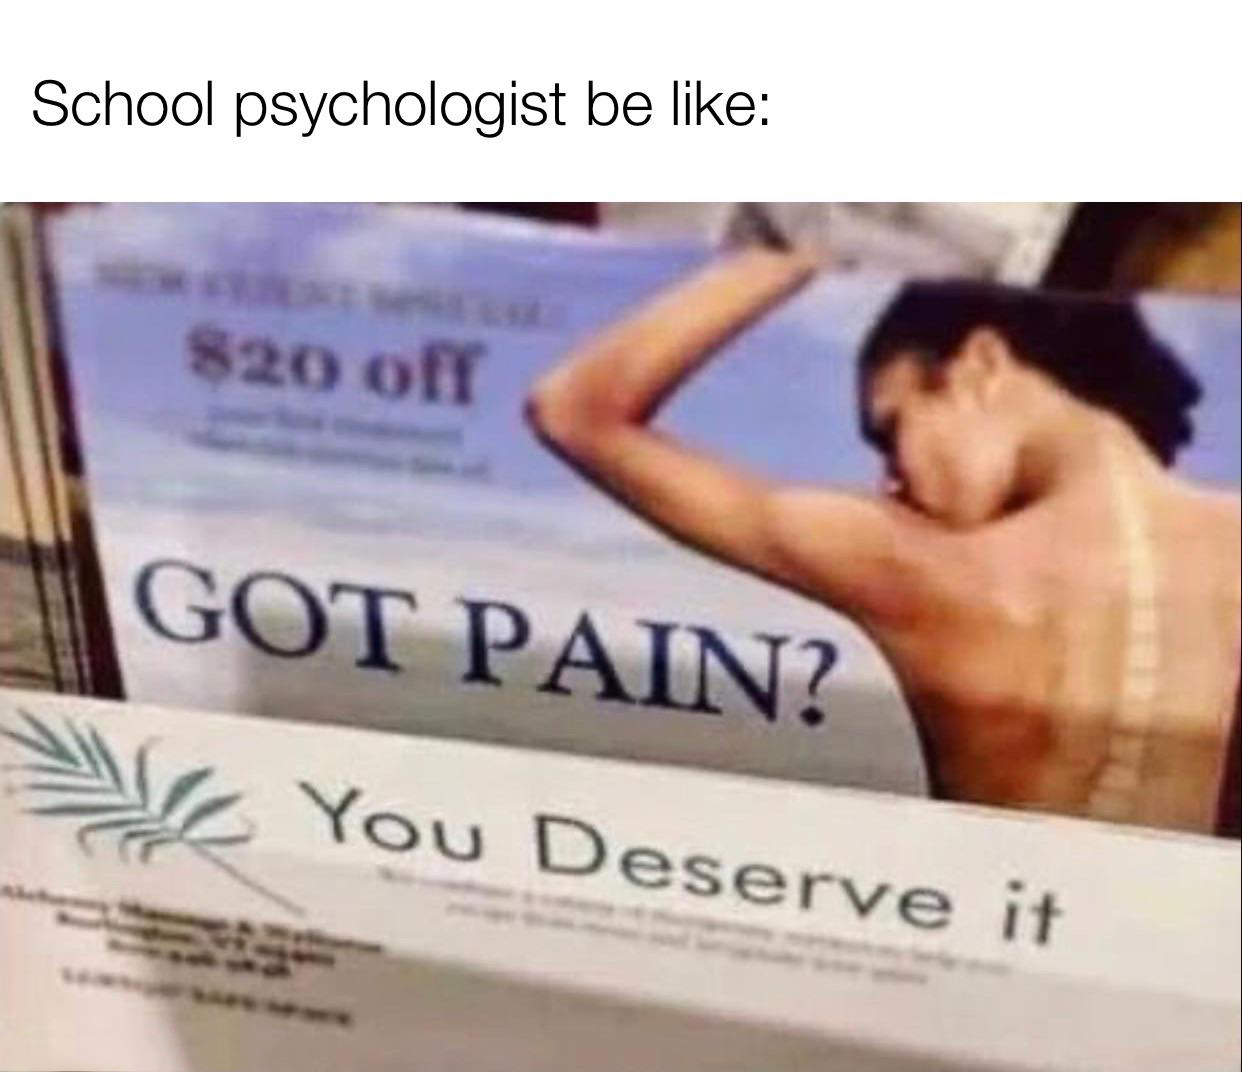 fresh memes - got pain you deserve - School psychologist be $20 off Got Pain? You Deserve it